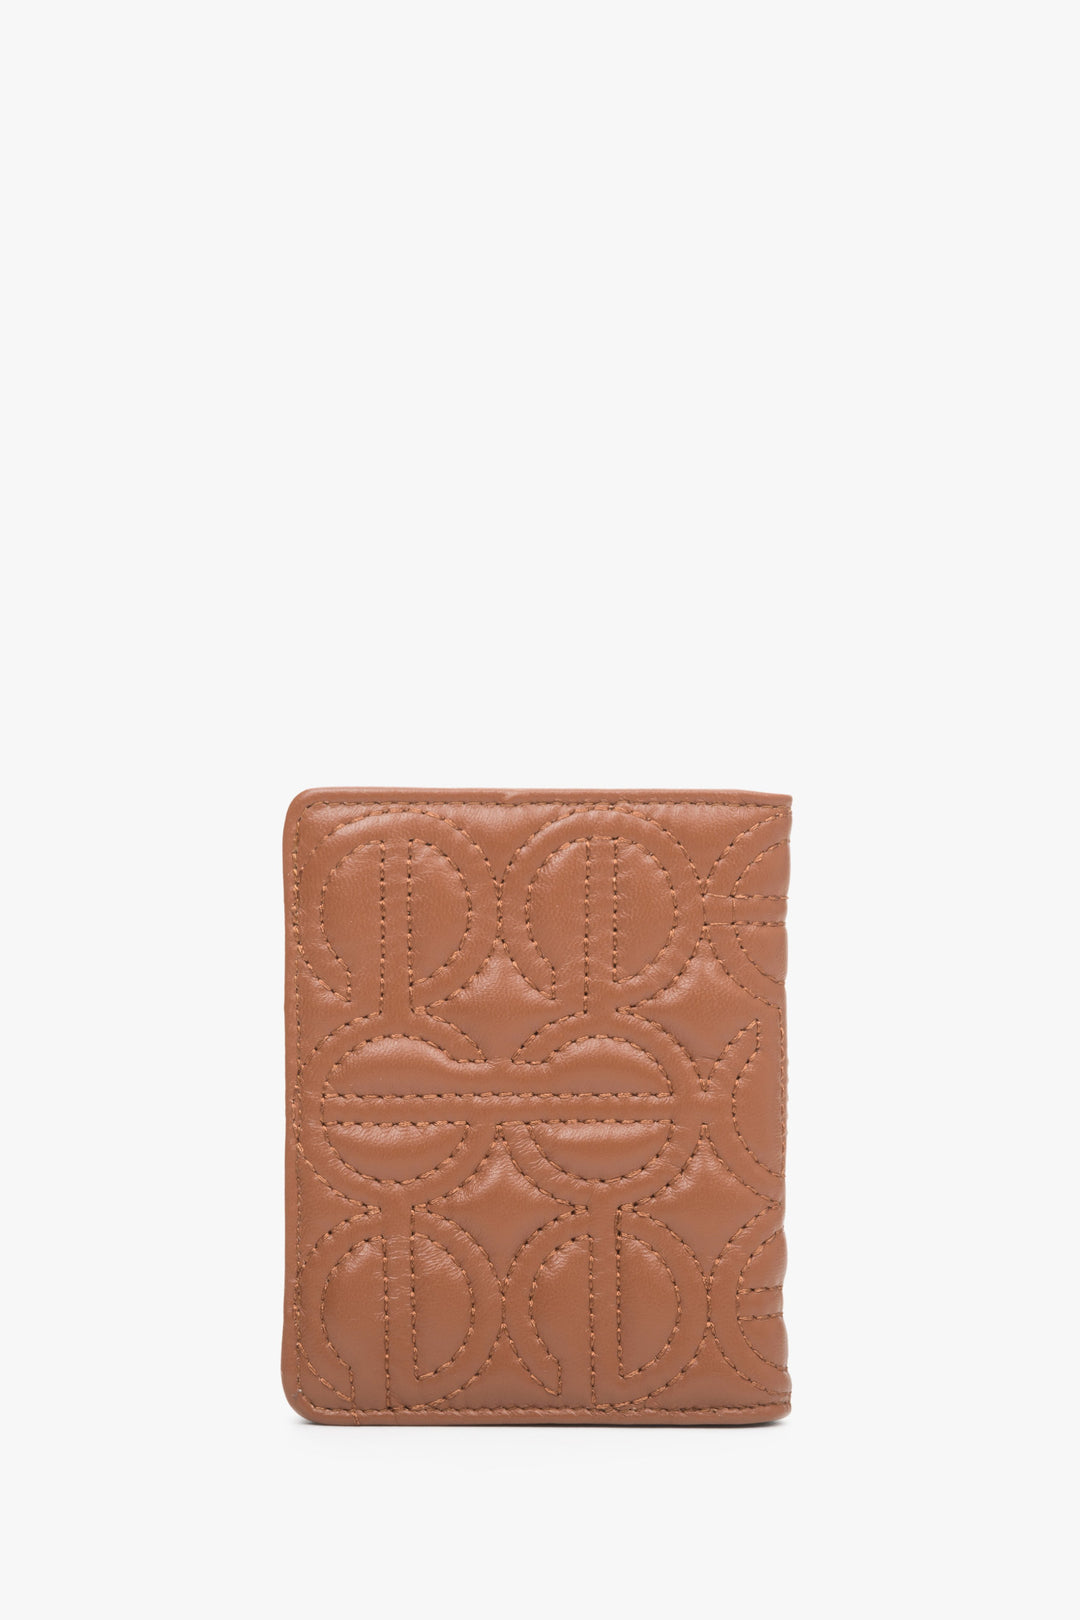 Skórzany, mały portfel damski w kolorze brązowym marki Estro z tłoczonym logo.